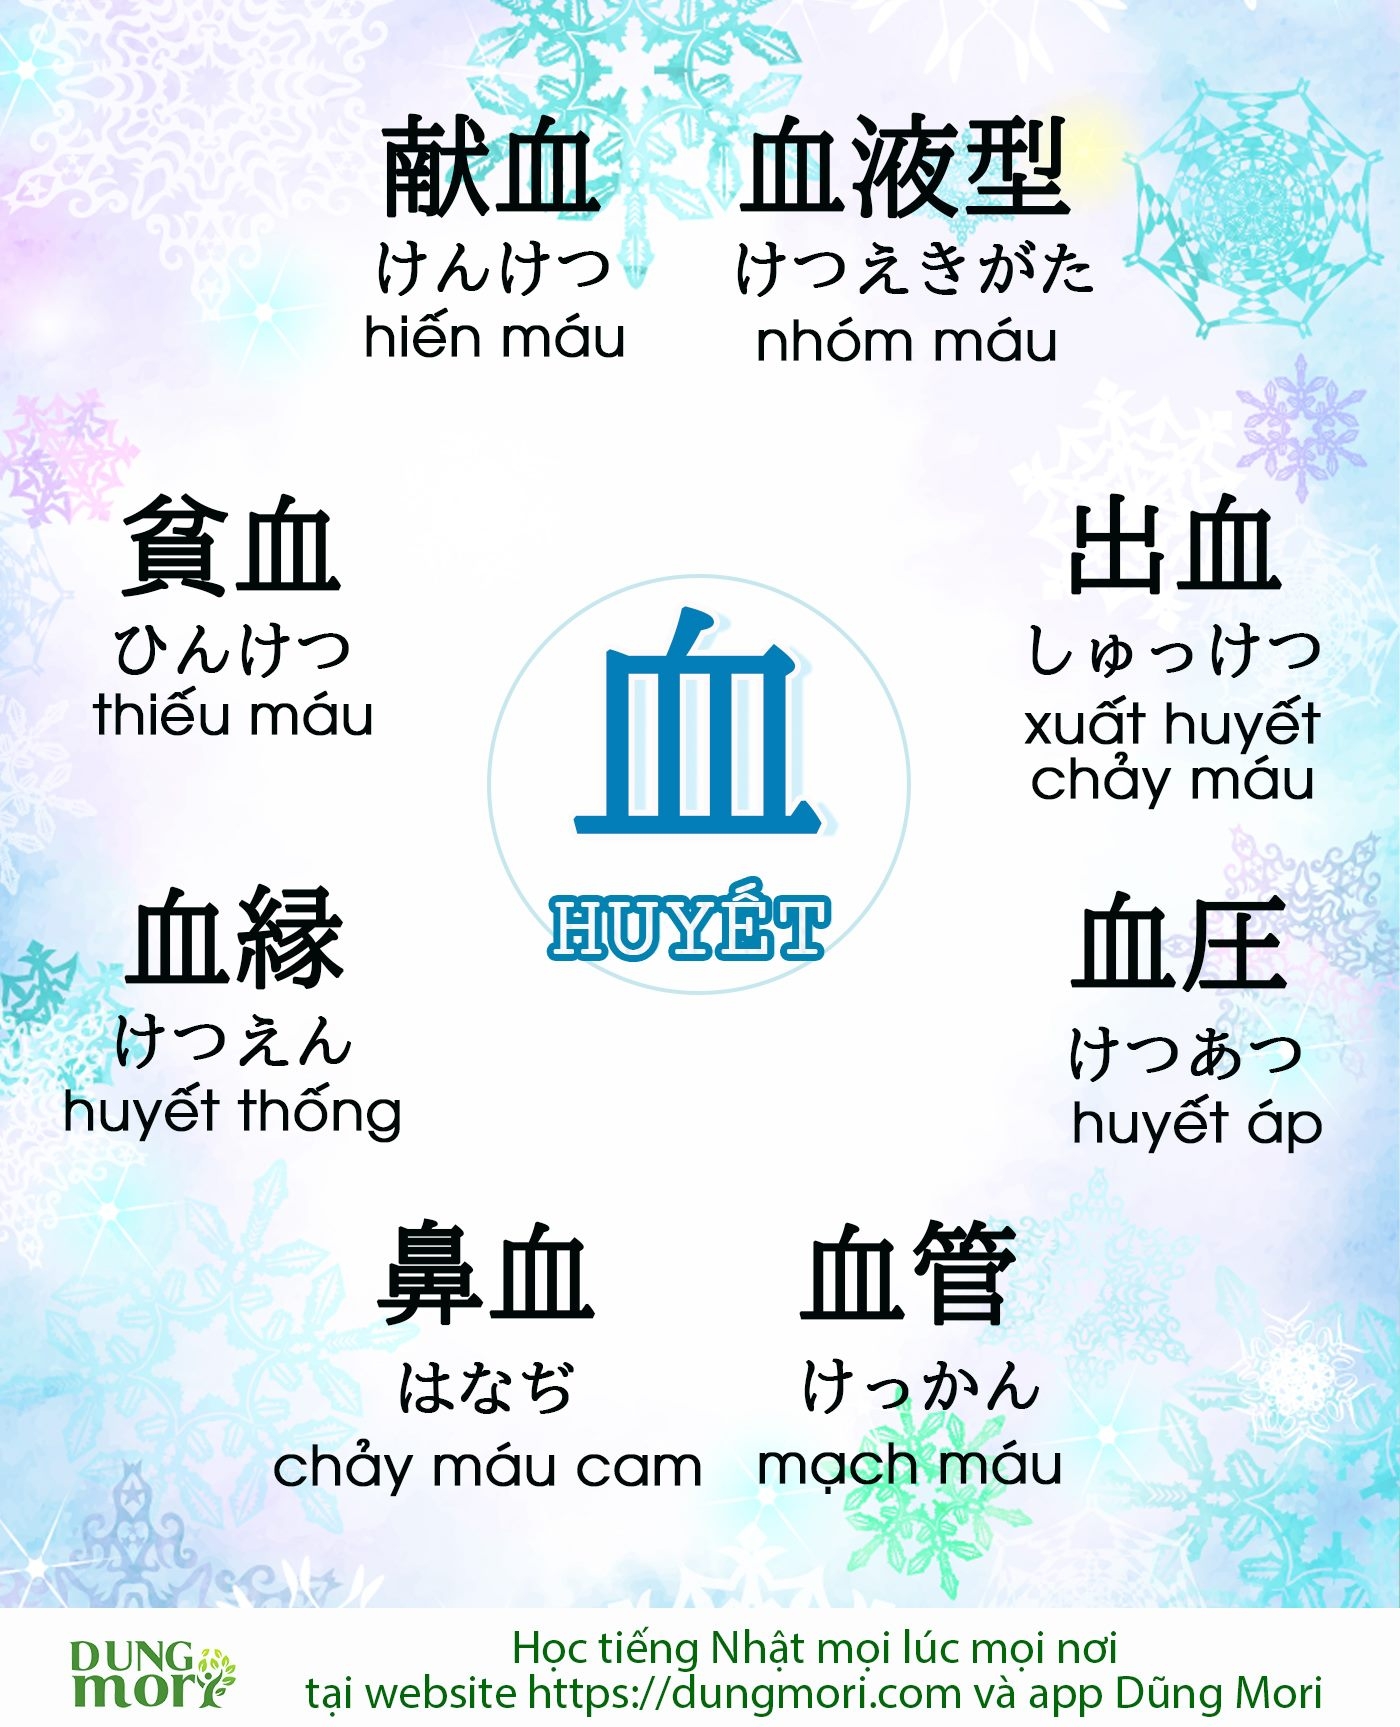 Một số từ vựng tiếng Nhật liên quan đến Chữ Huyết 血